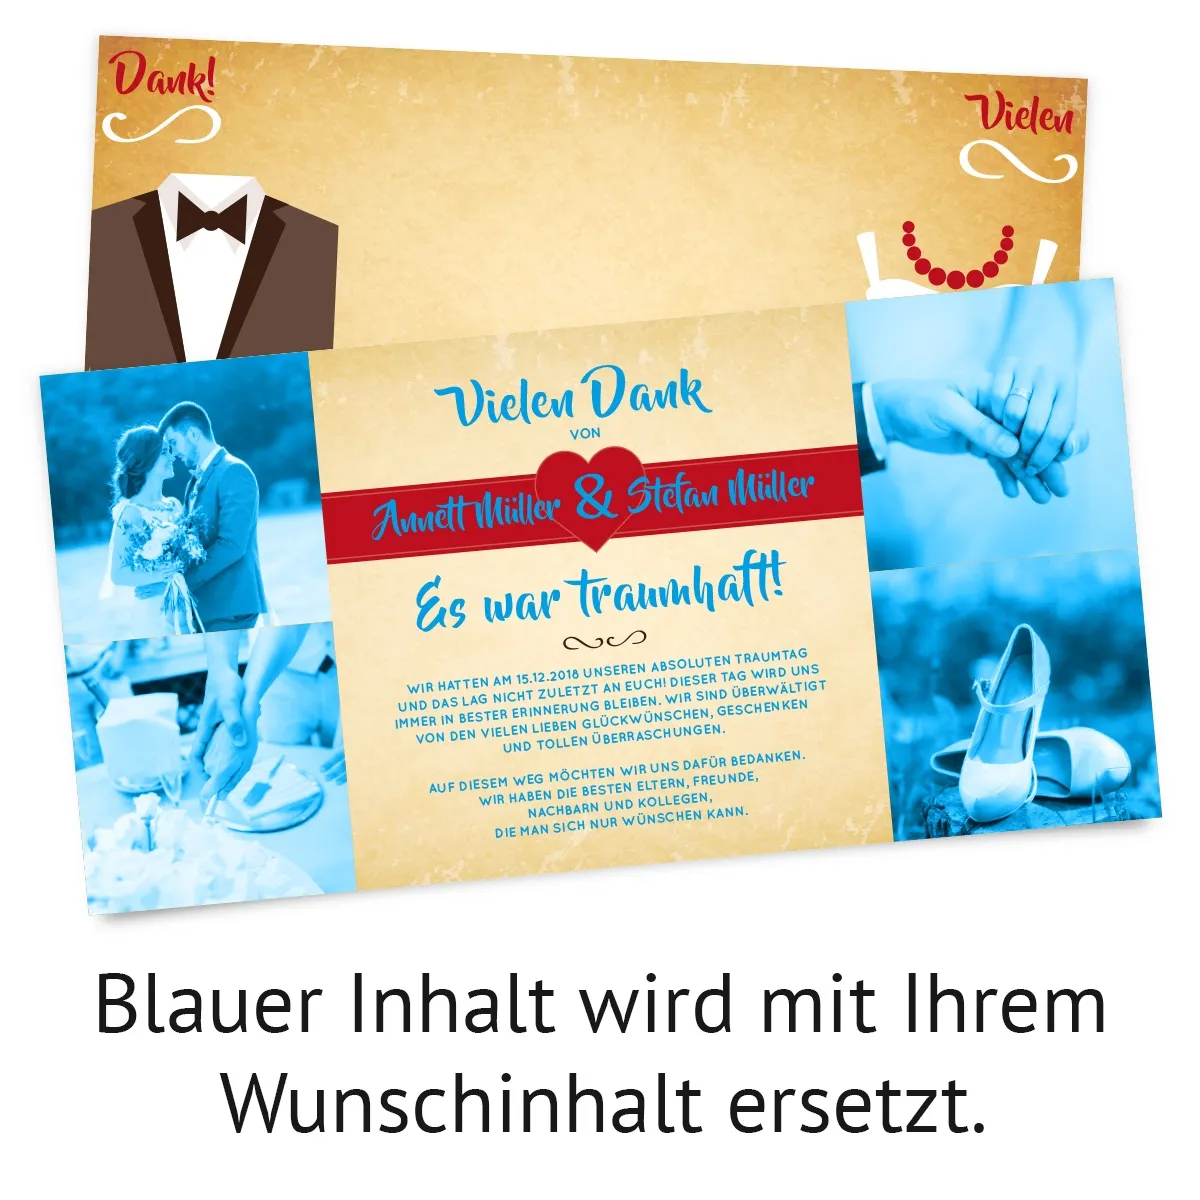 Hochzeit Dankeskarten - Braut und Bräutigam Altarfalz in Vintage